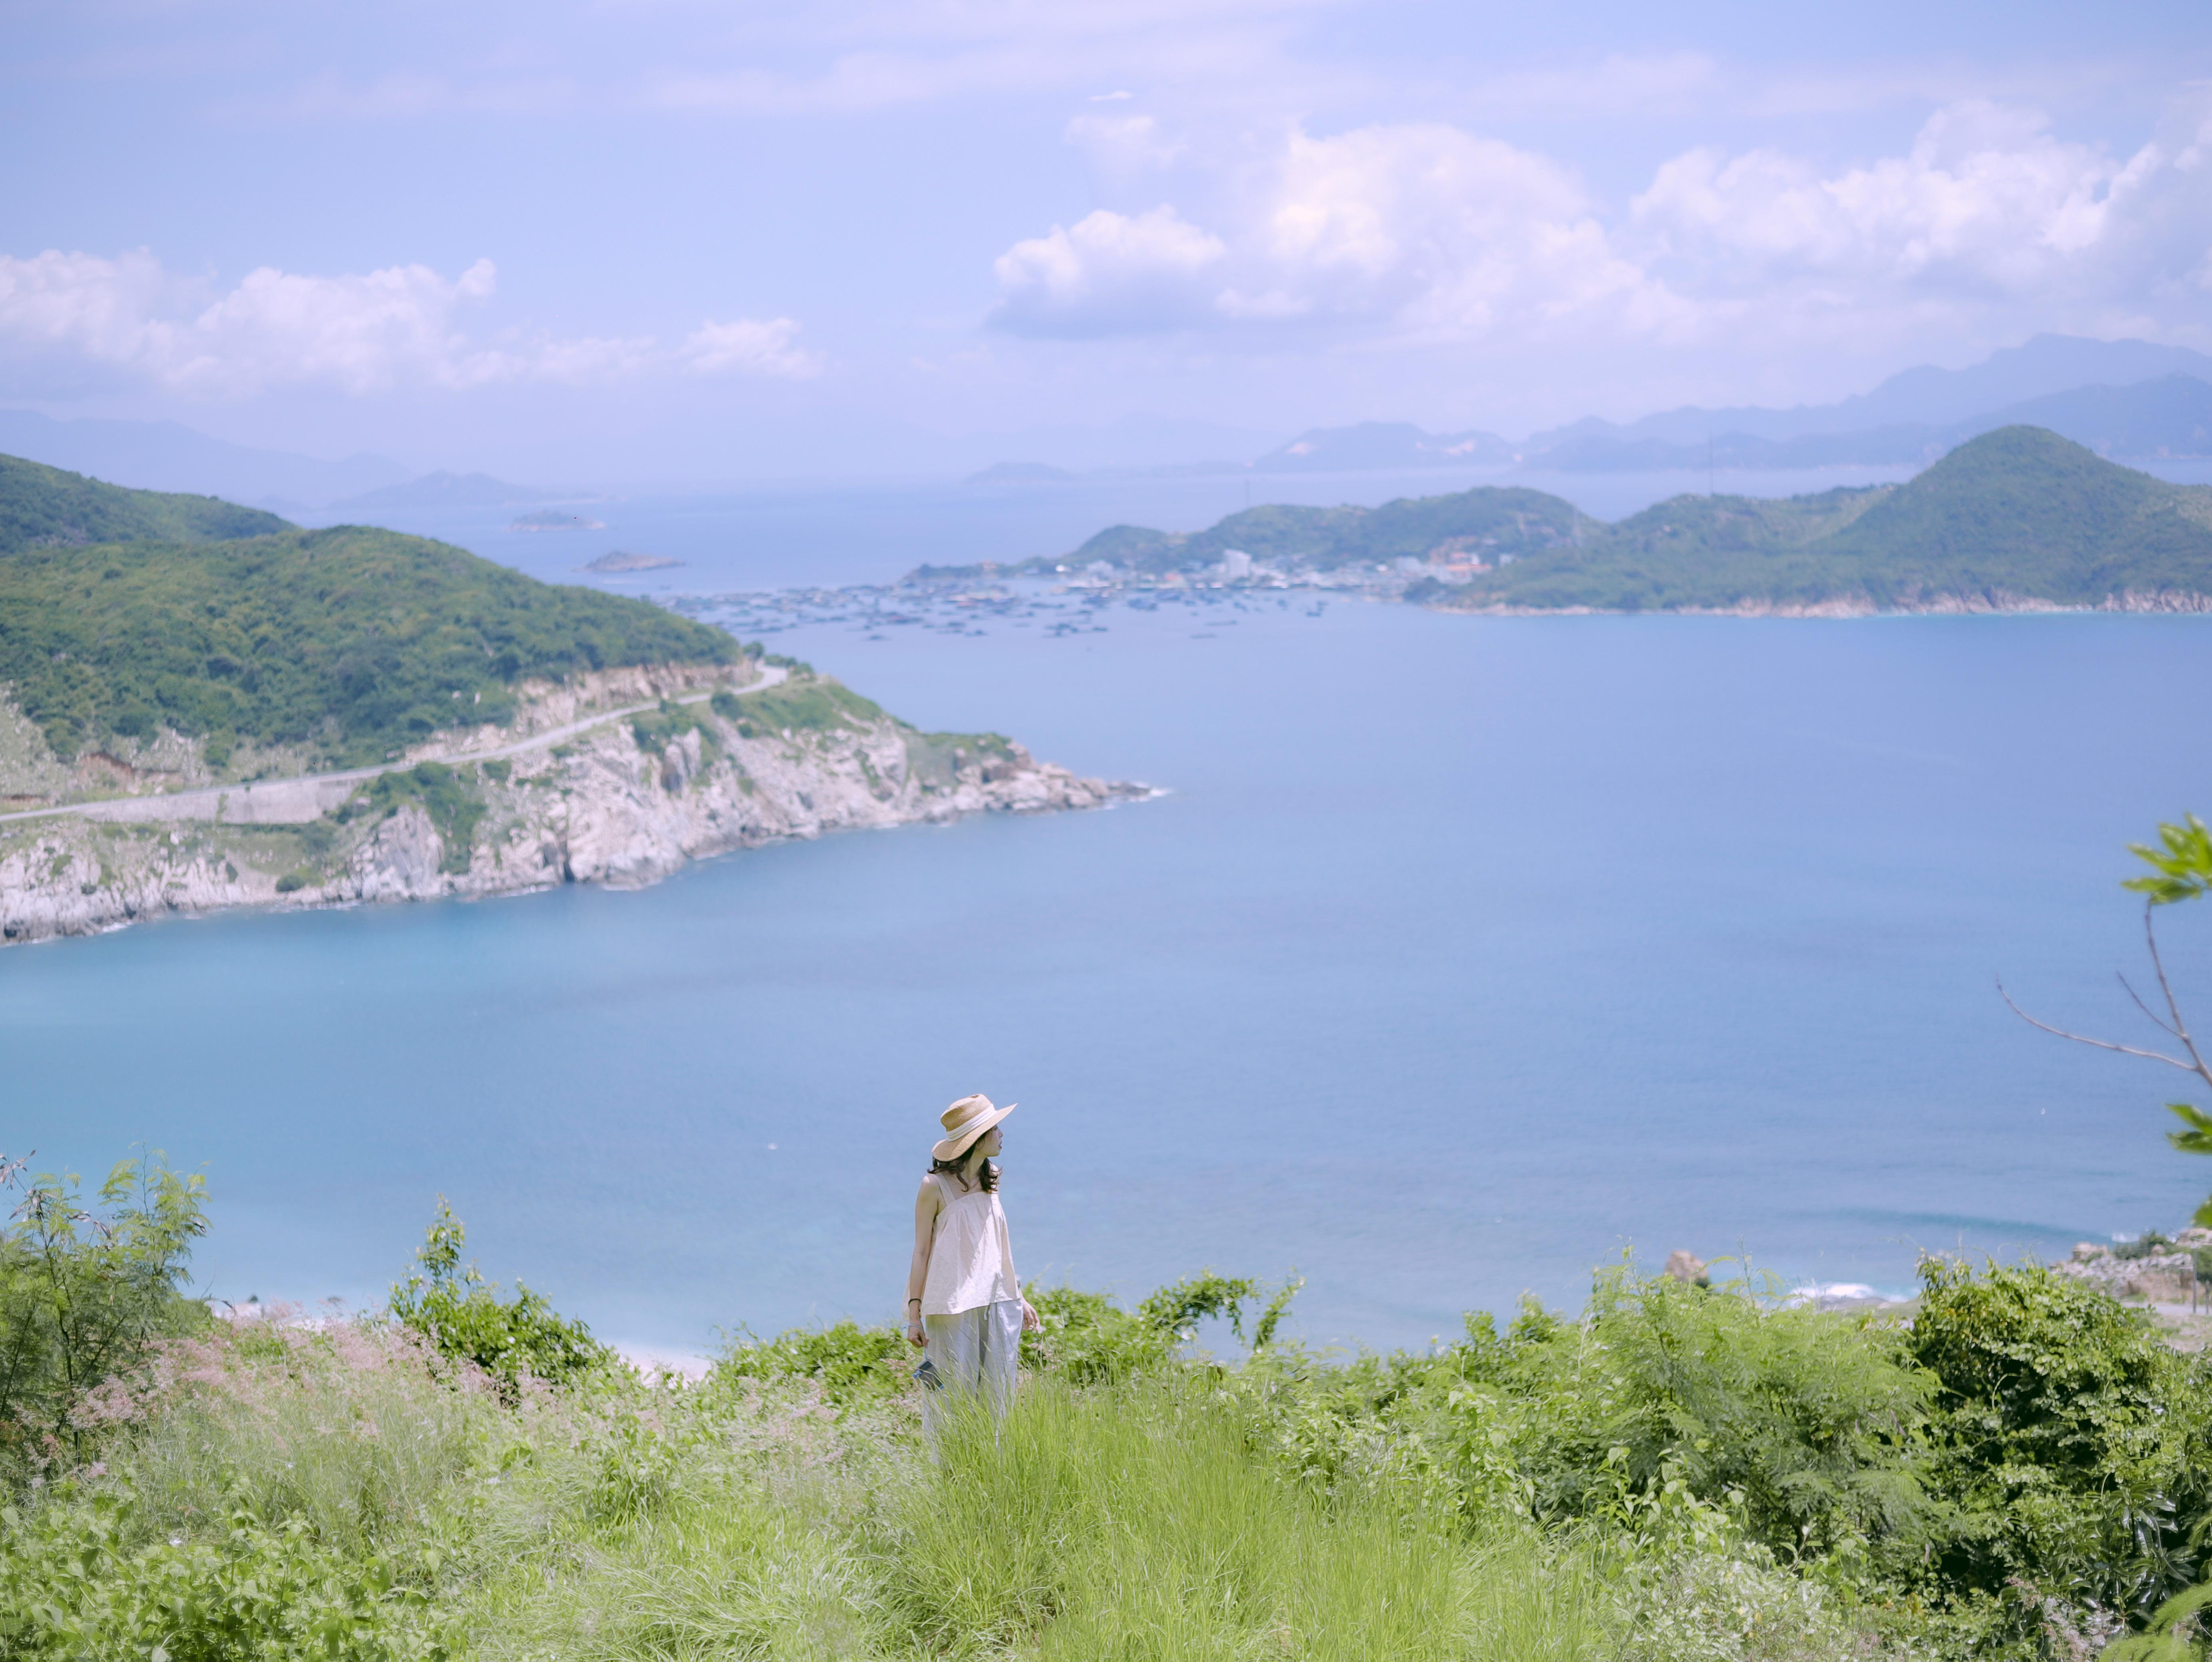 Đến 'Địa Trung Hải' của Việt Nam, ngắm biển xanh cát trắng và làng chài đẹp mê hồn - 3